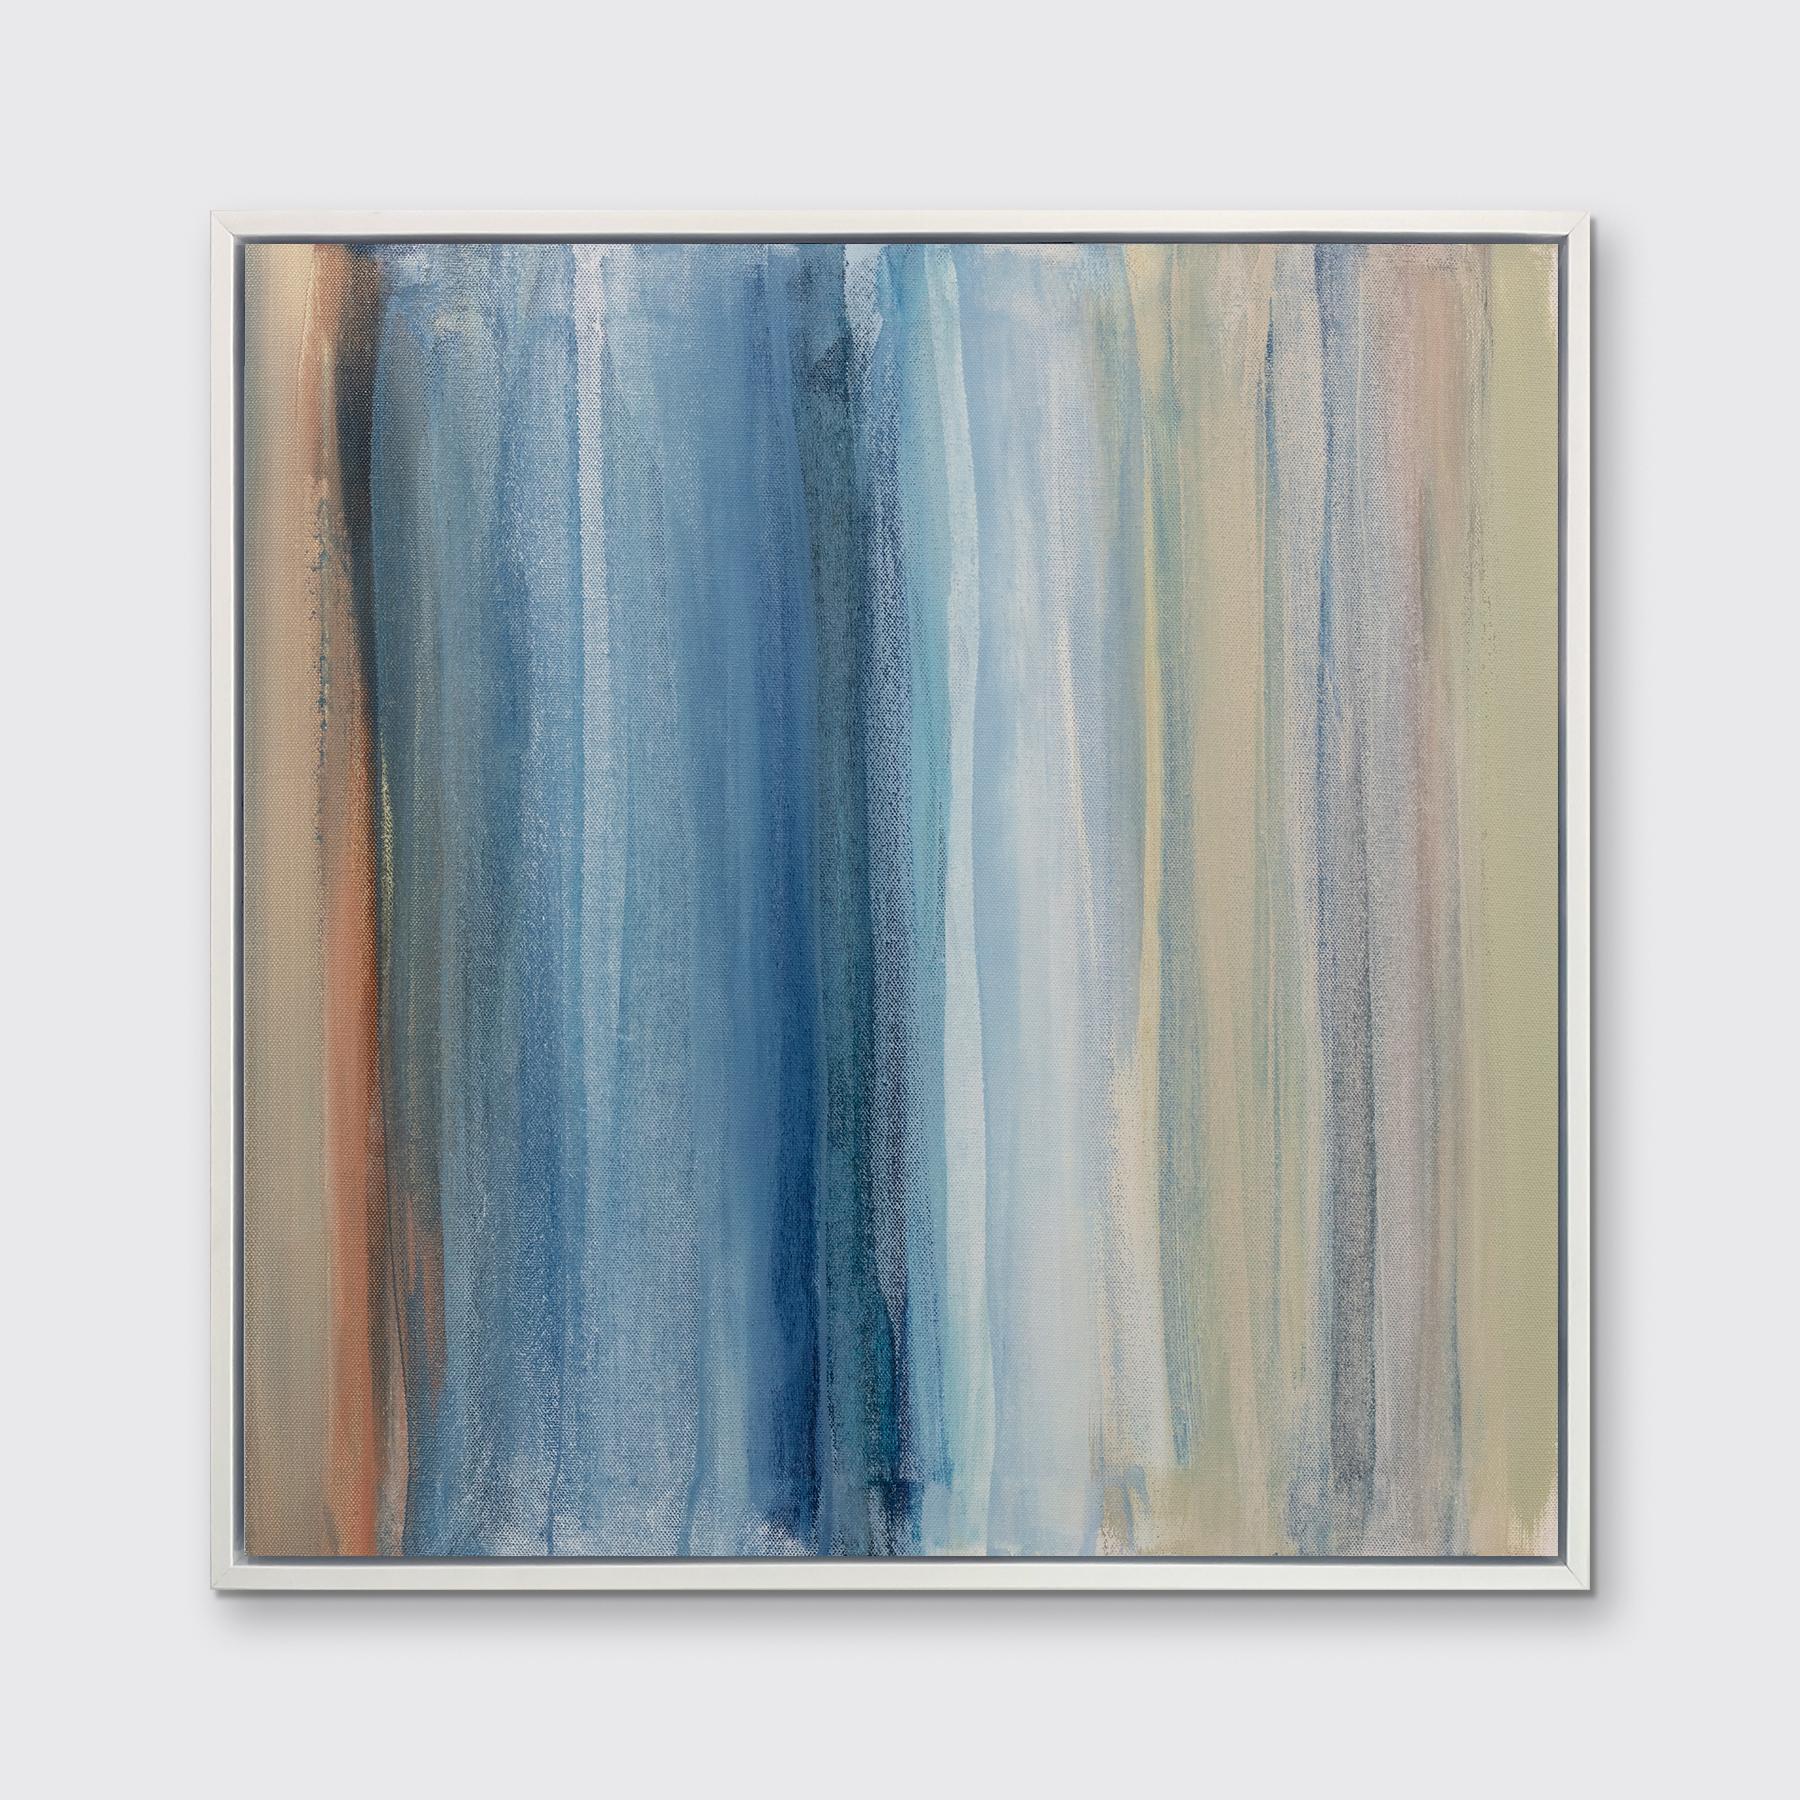 Dieser zeitgenössische Druck in limitierter Auflage von Teodora Guererra zeigt eine farbenfrohe Palette aus Weiß, gedämpftem Orange, Grün und verschiedenen Blautönen, die in leichten, vertikalen Strichen zu einer ausgewogenen abstrakten Komposition